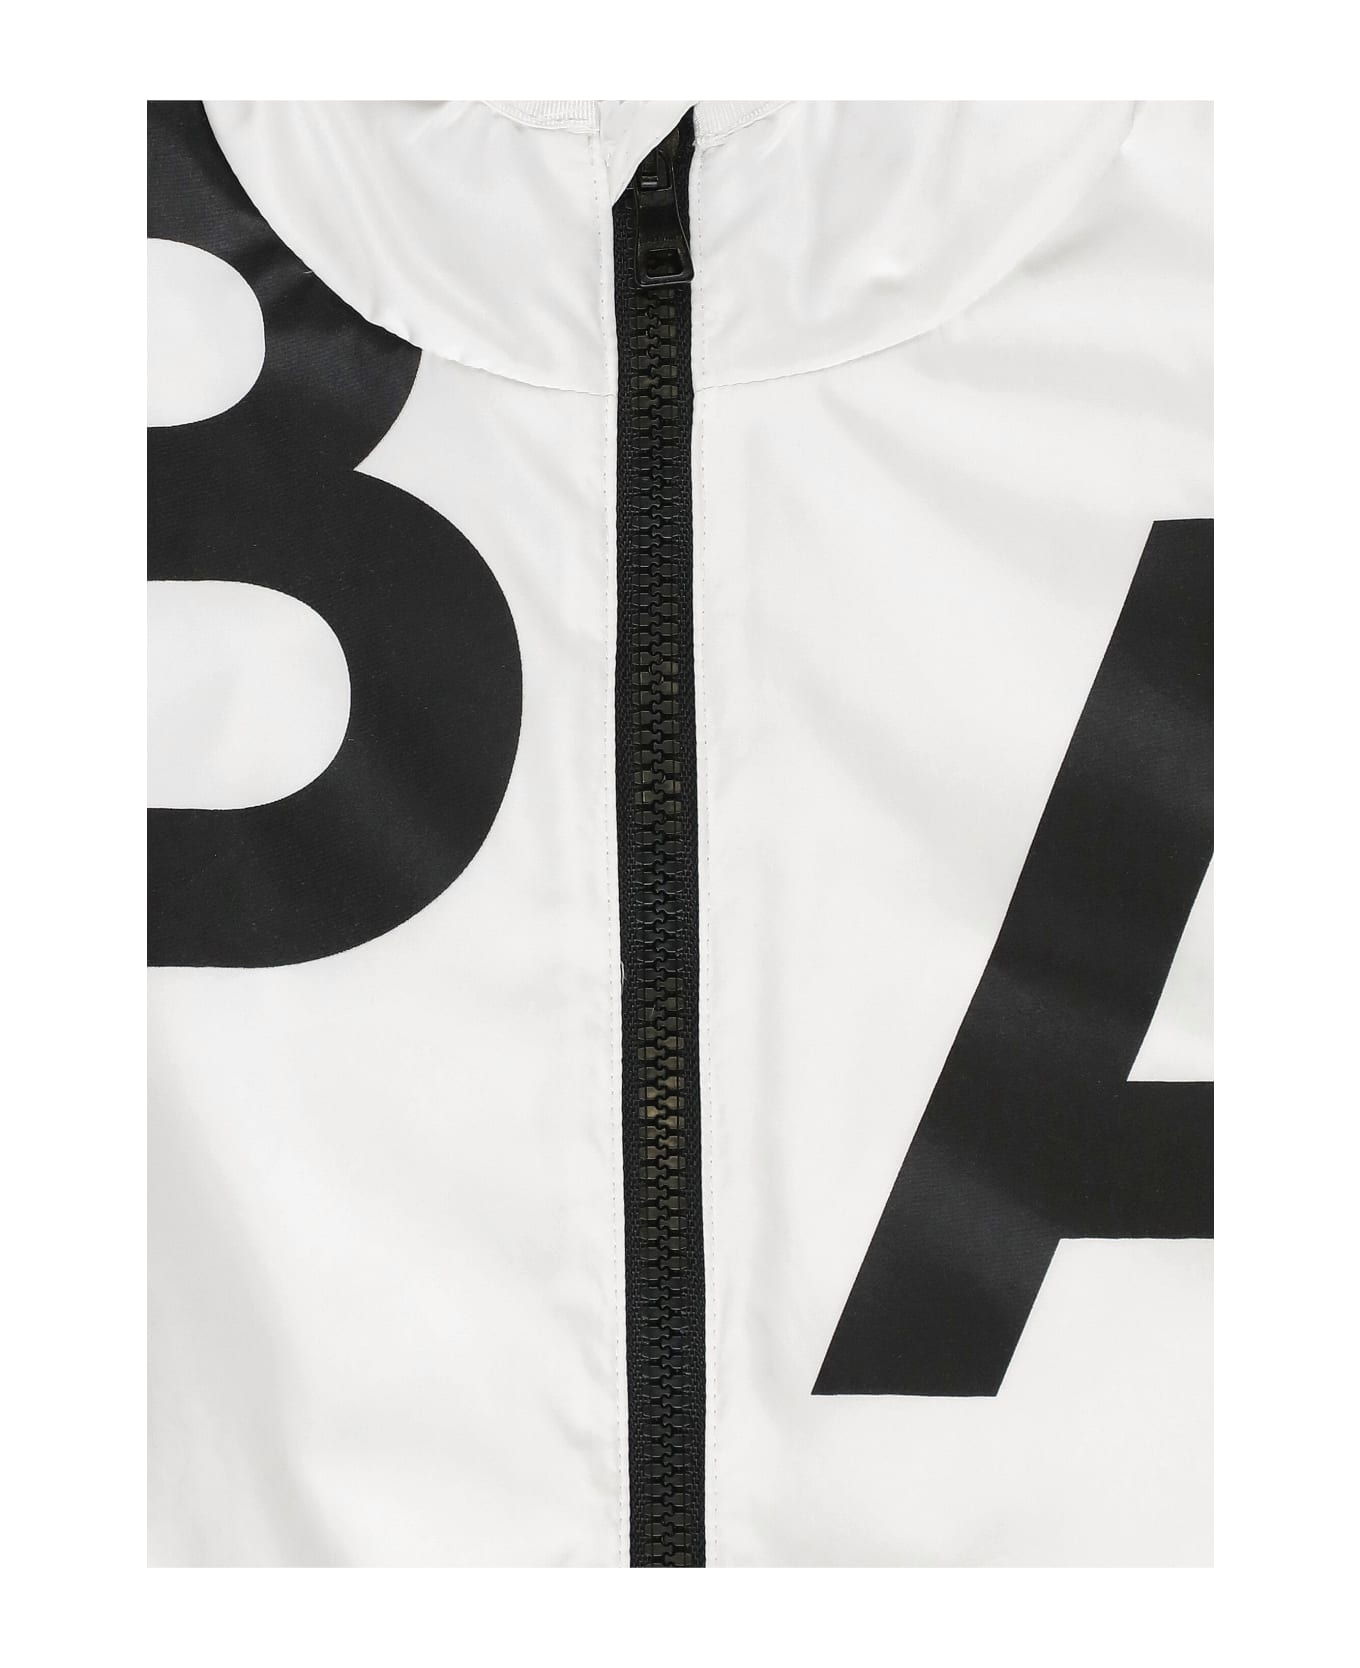 Balmain Jacket With Logo - White